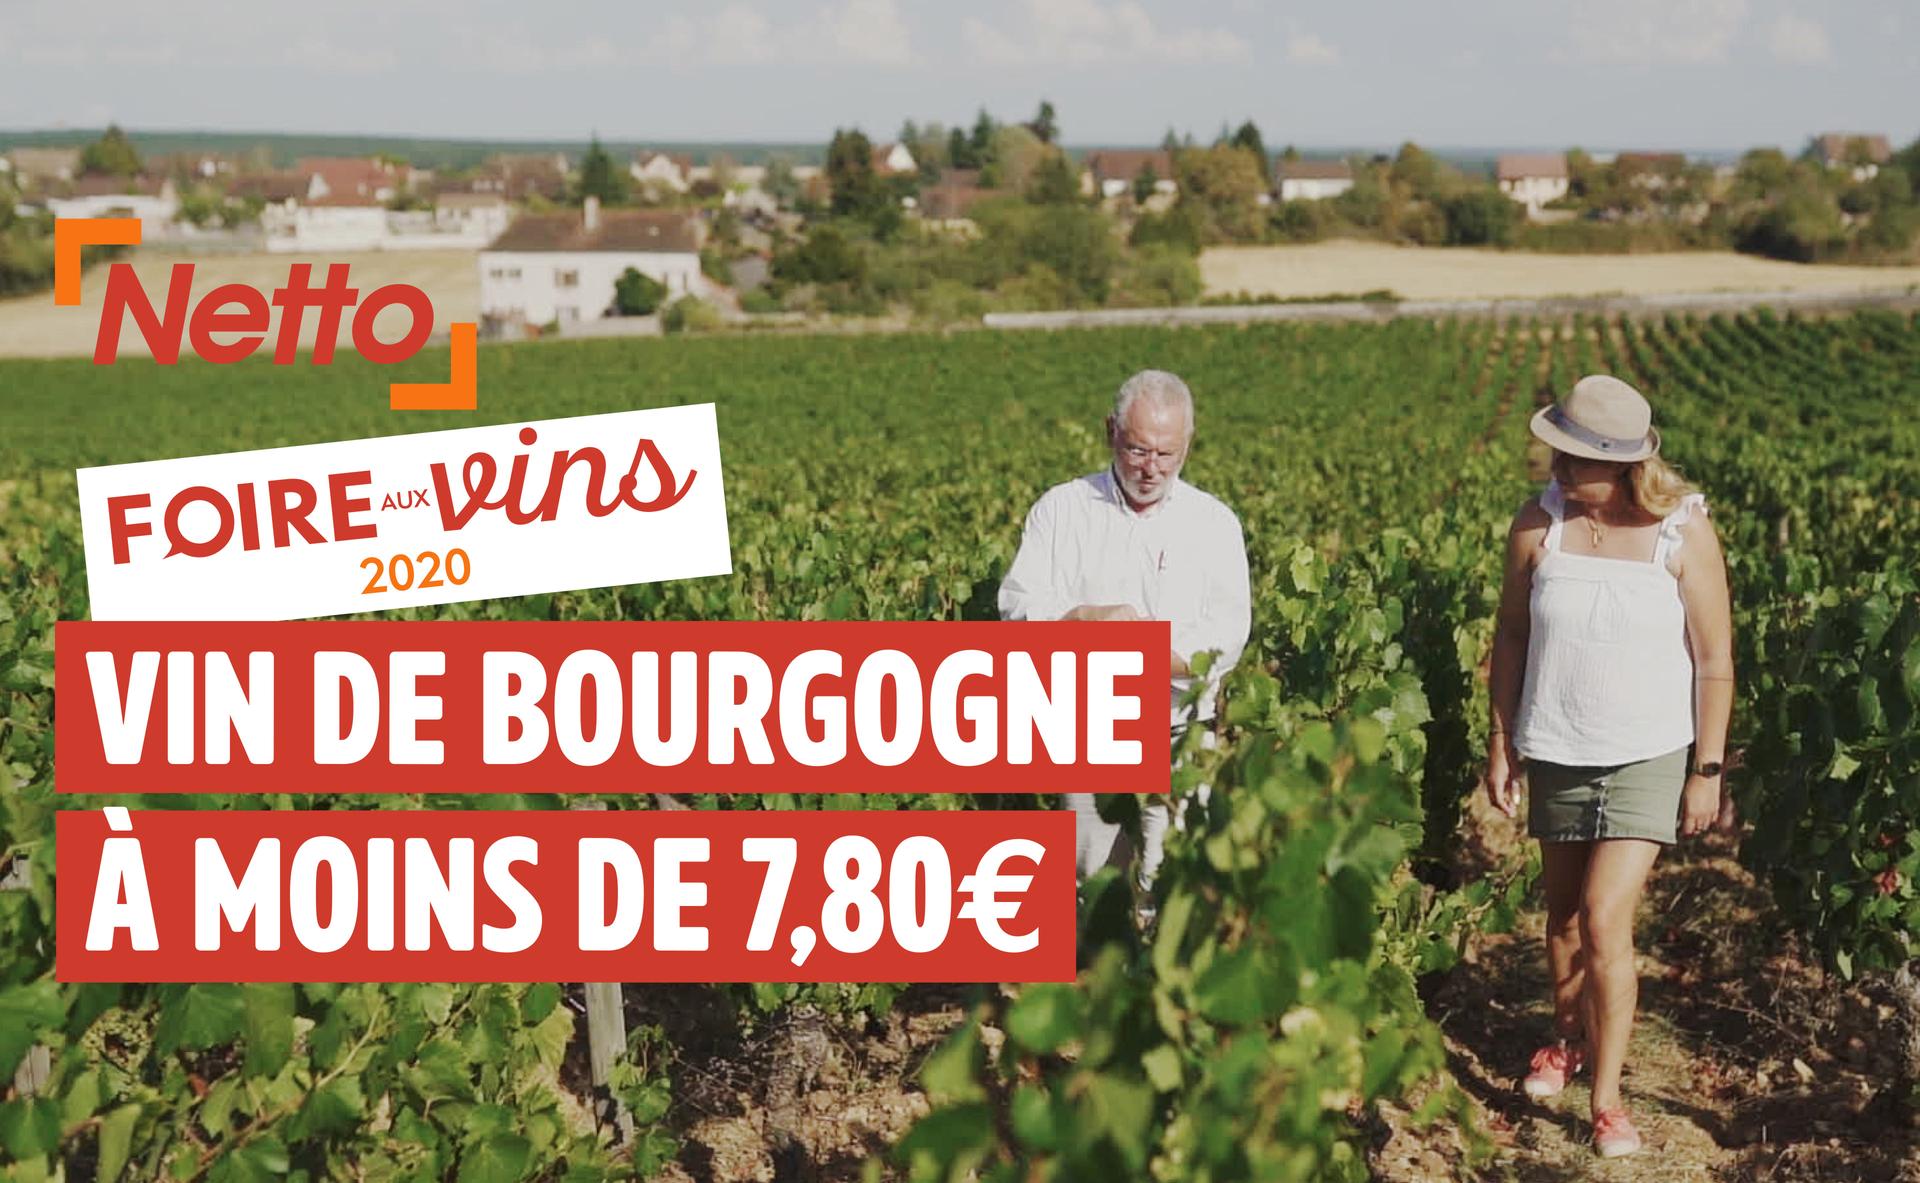 Foire aux vins 2020 : AOP Bourgogne Côte Chalonnaise